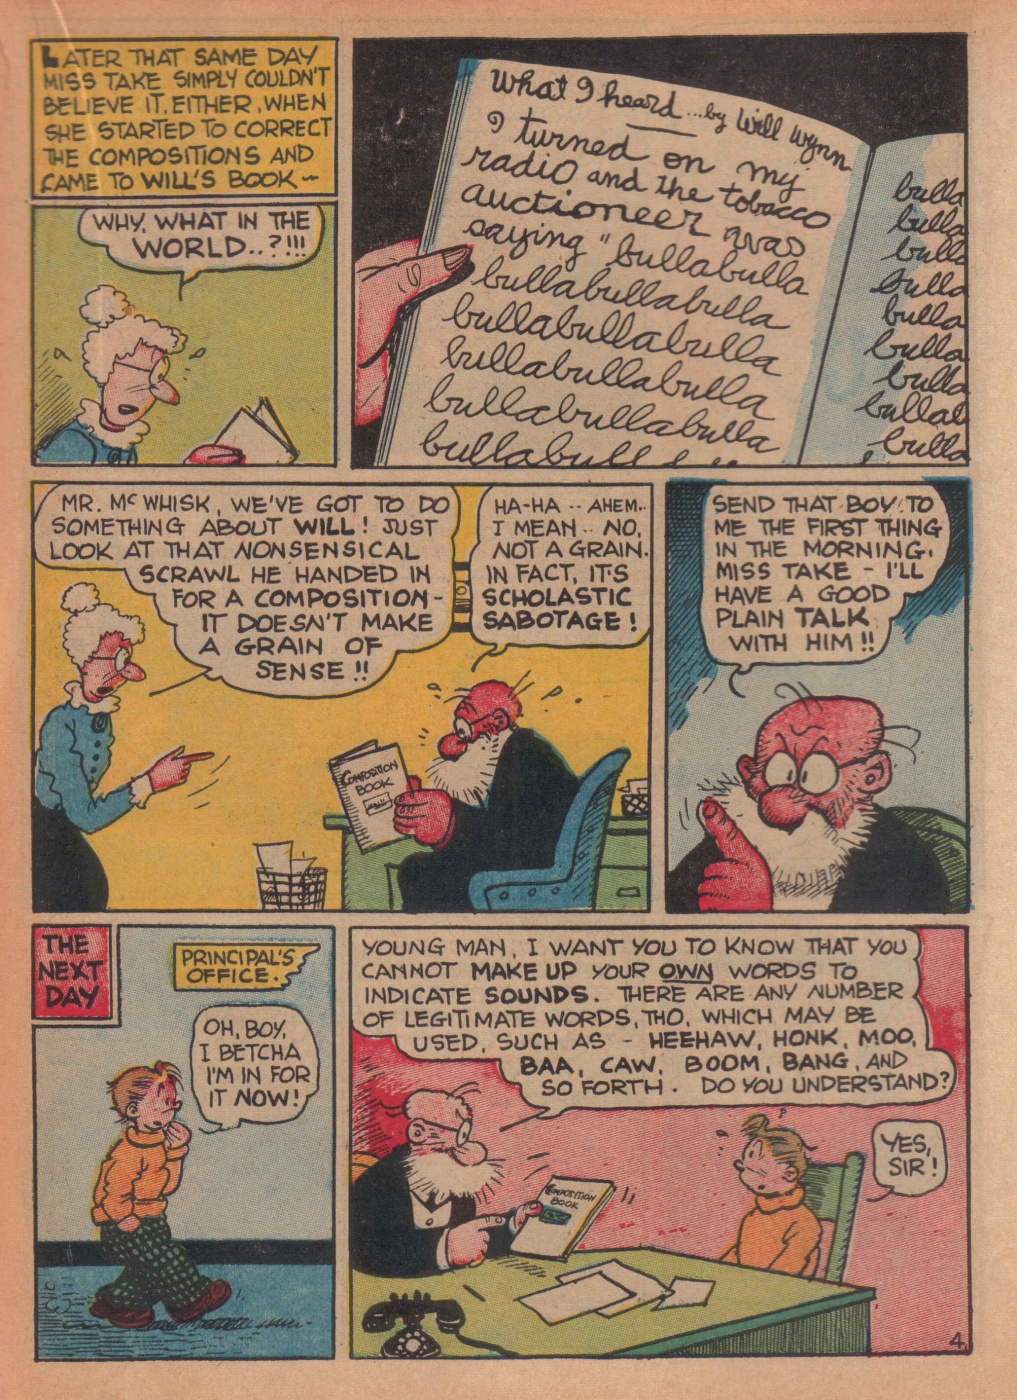 Super Dooper Funny Comics (15)